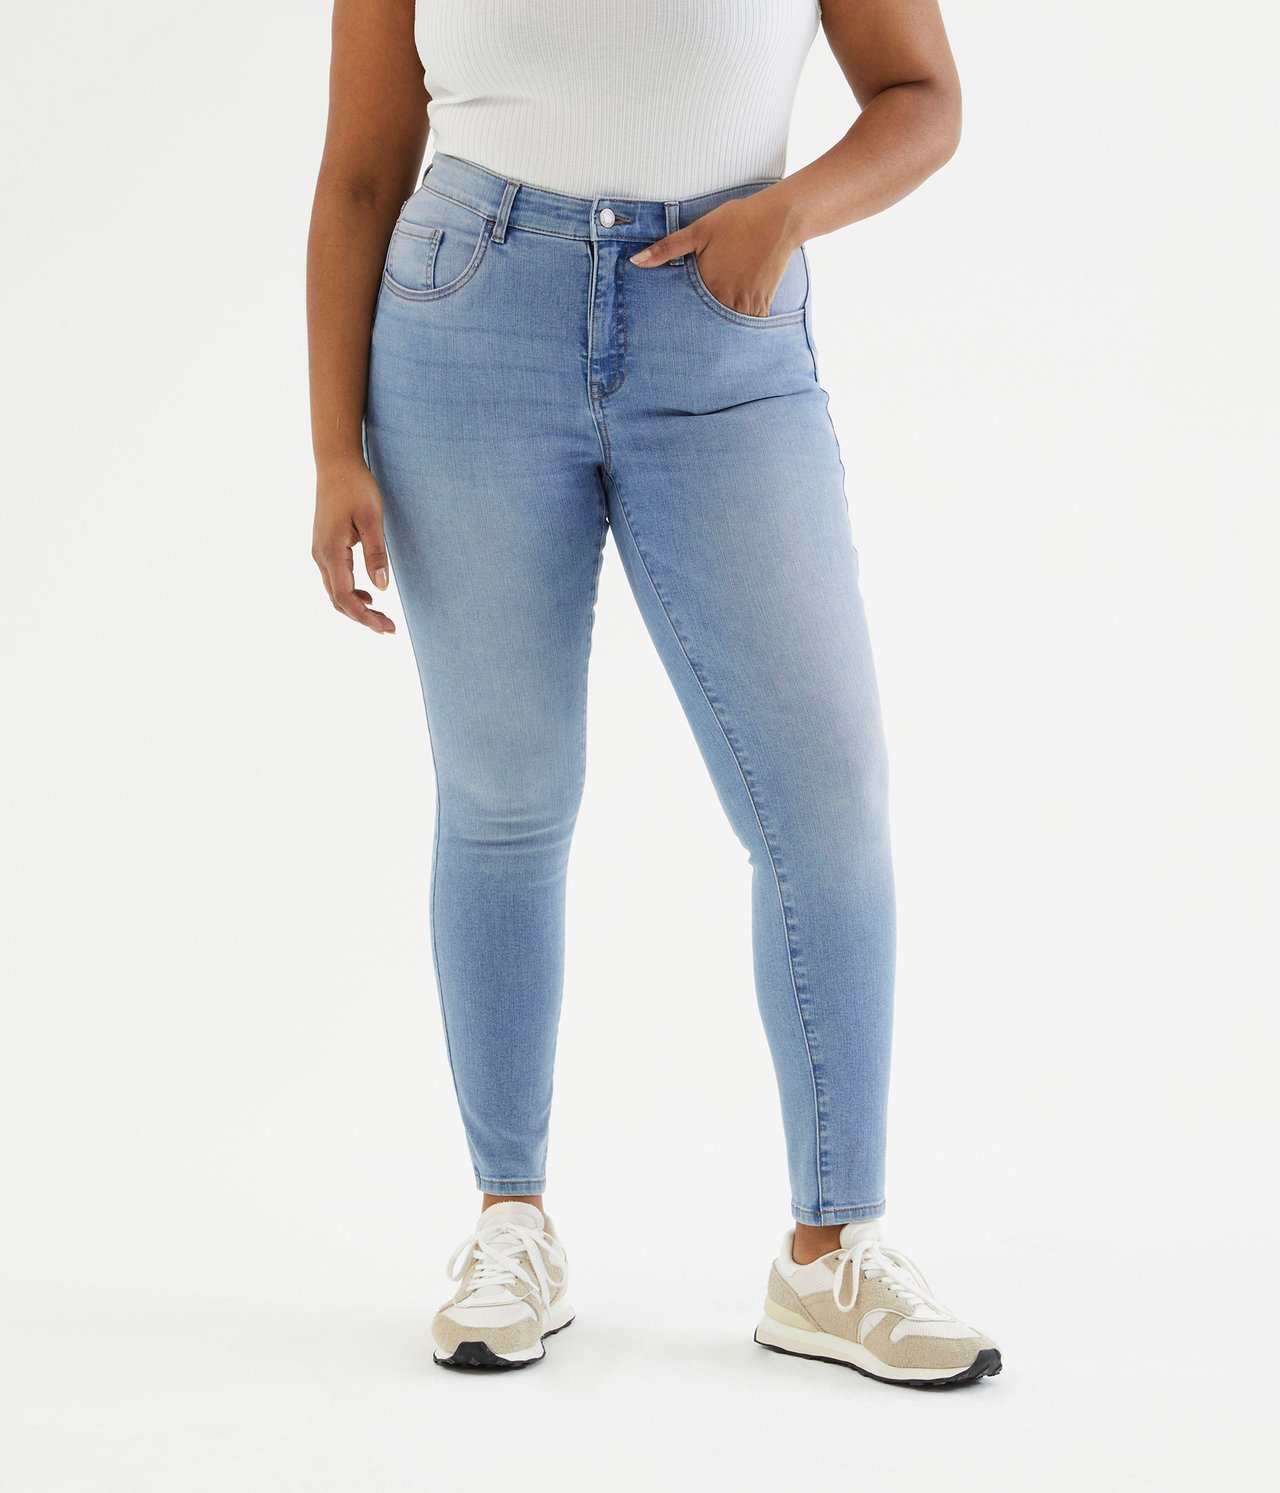 Cropped Slim Jeans Mid Waist - Jasny dżins - 5